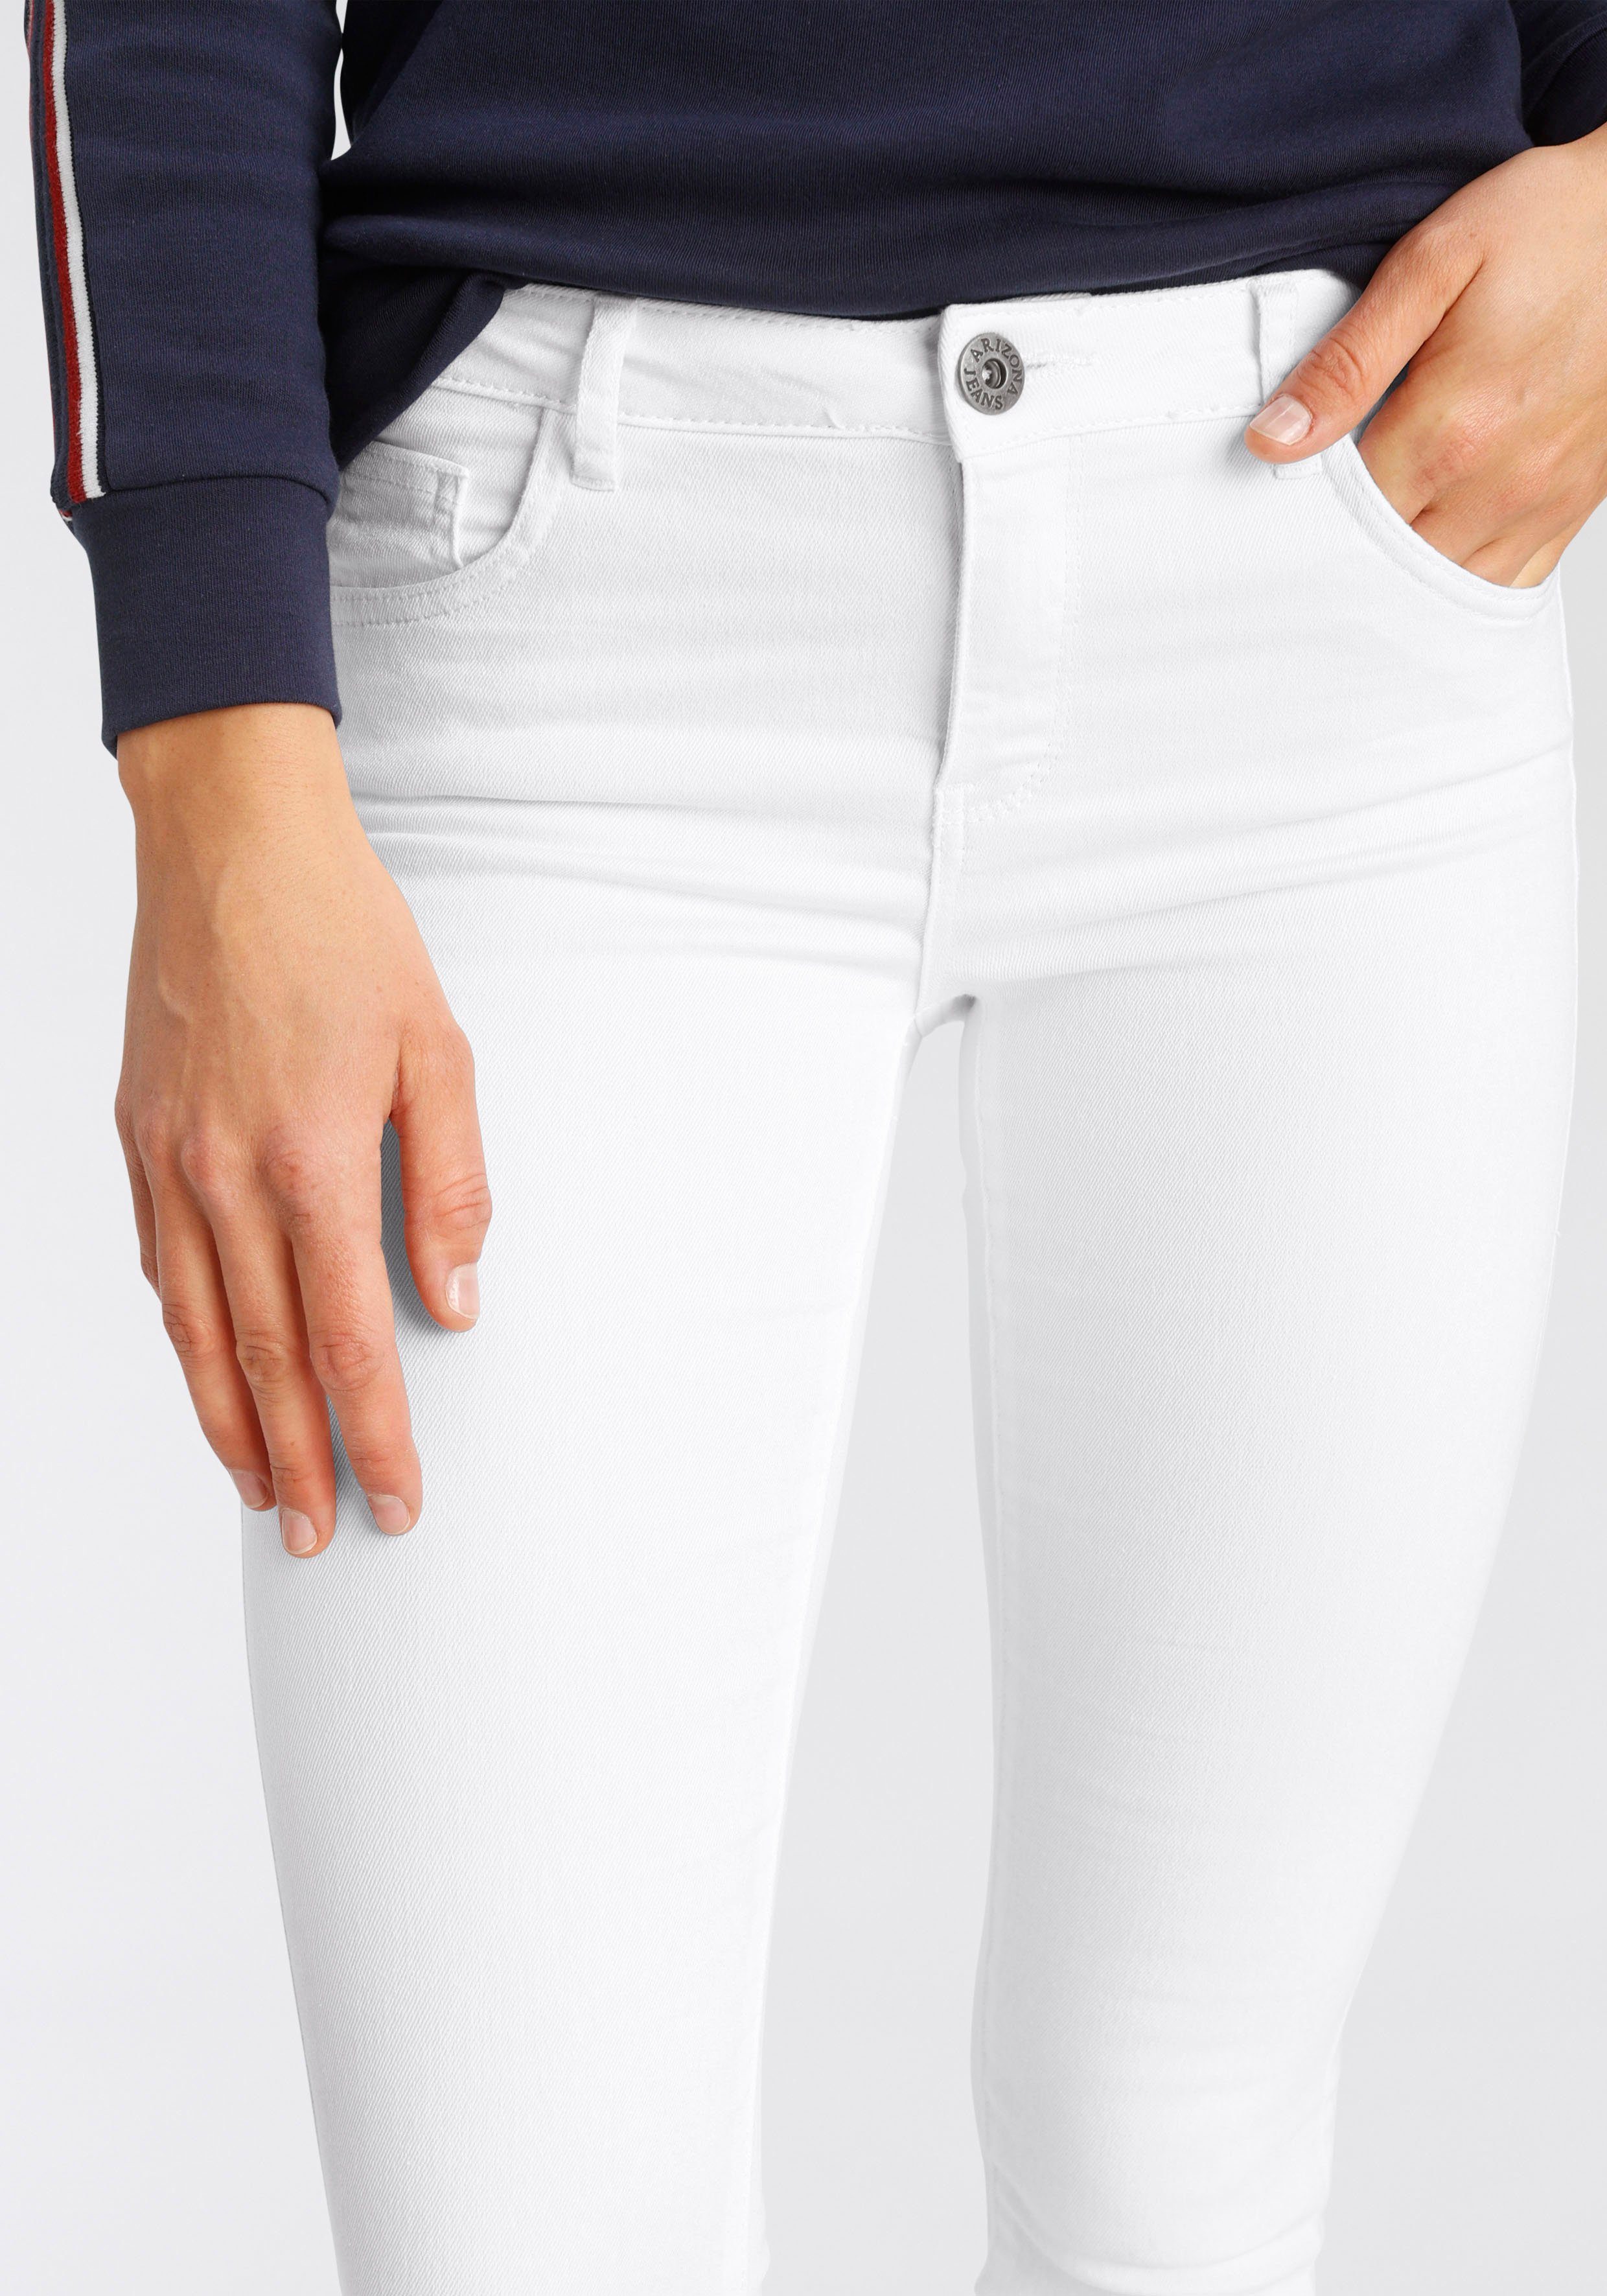 Waist Mid Skinny-fit-Jeans white Ultra-Stretch Arizona